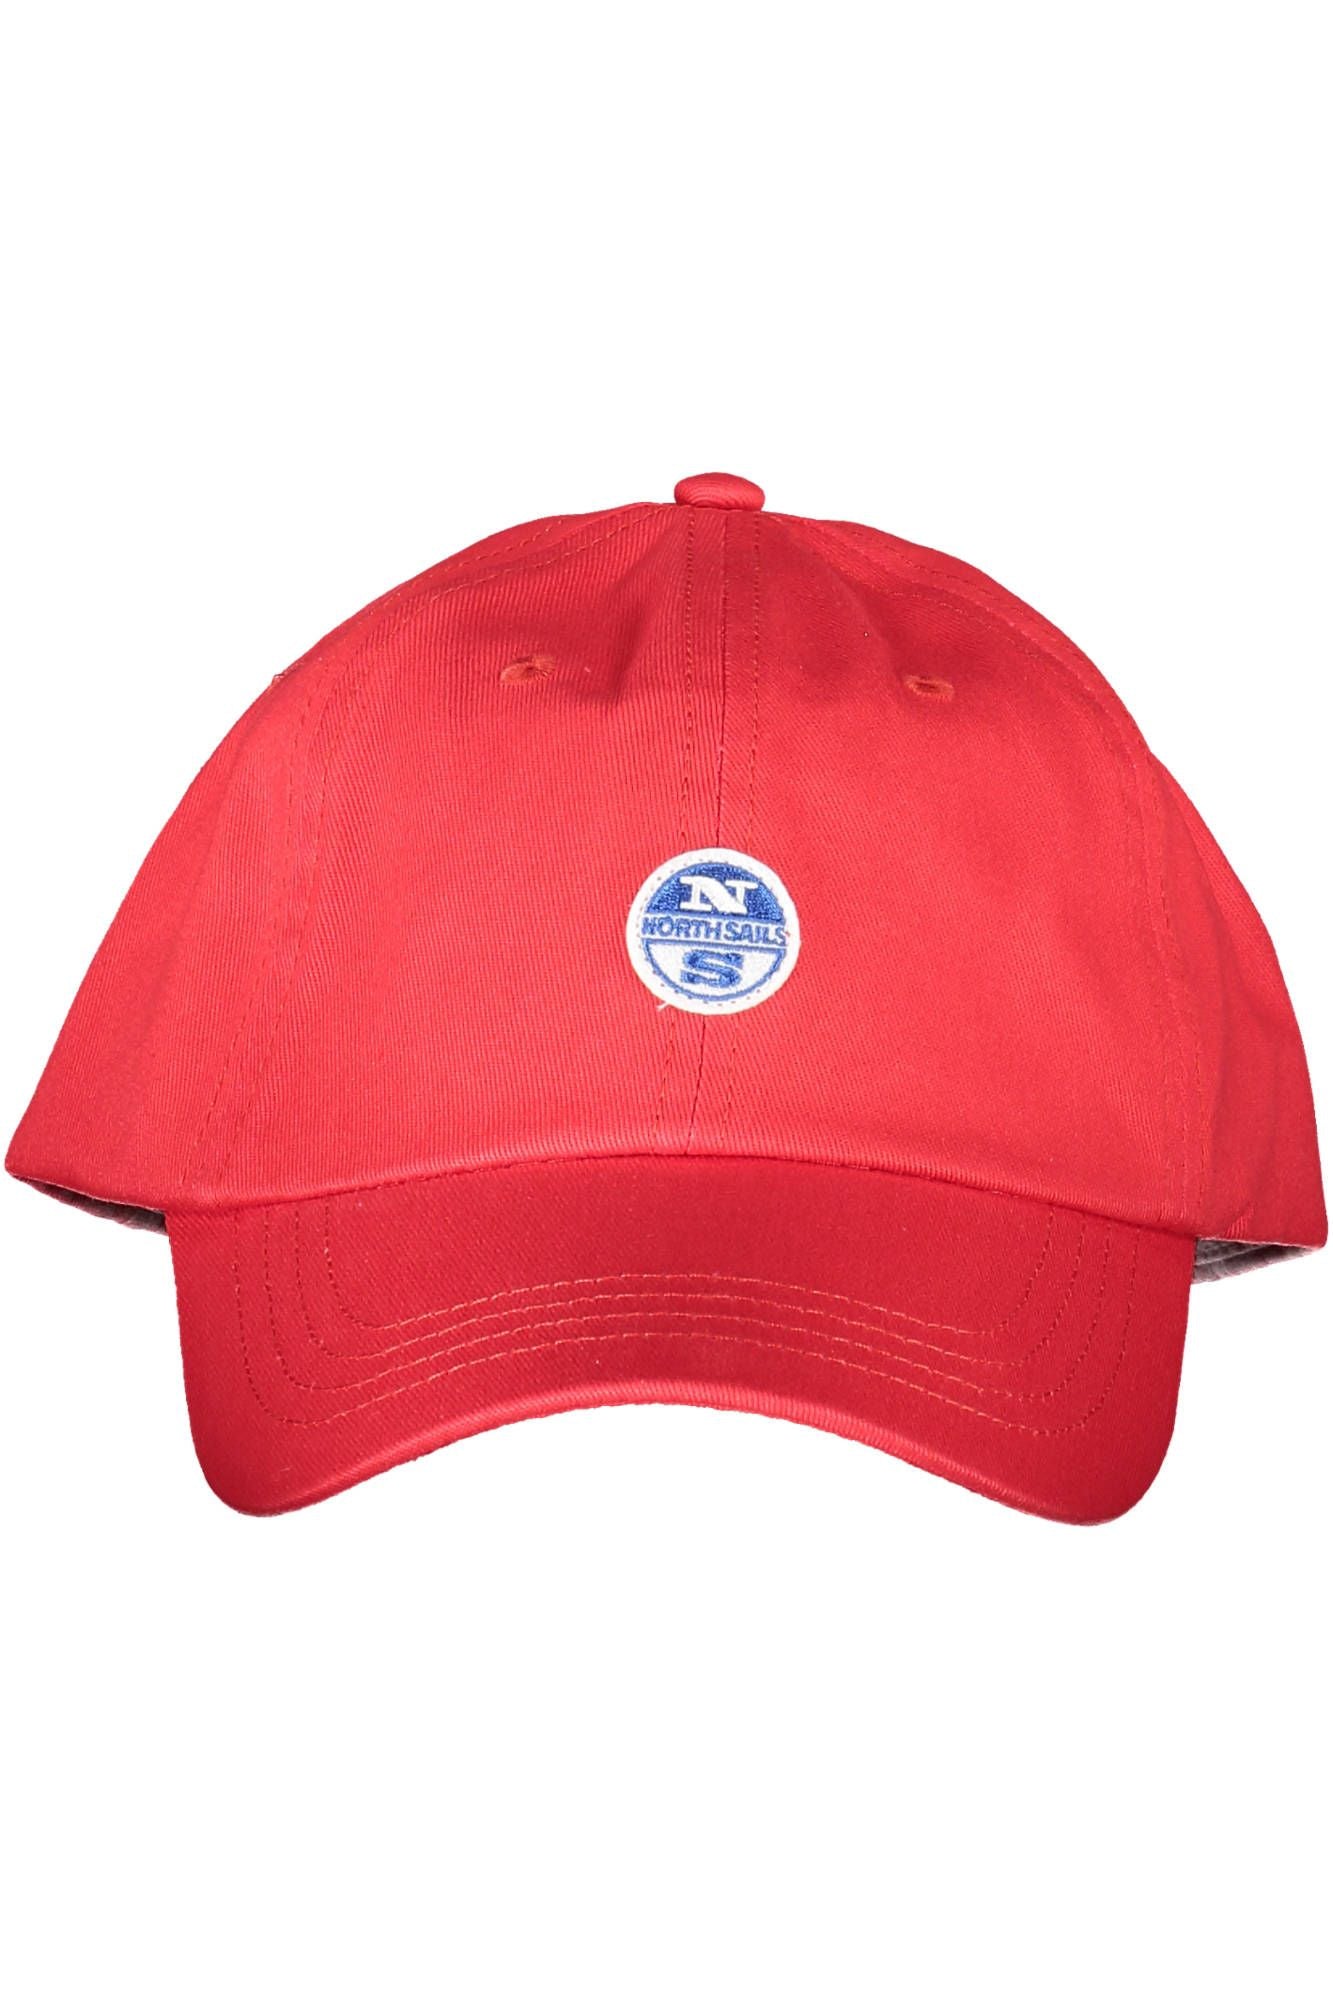 Fashionsarah.com Fashionsarah.com North Sails Elegant Red Cotton Cap with Logo Visor